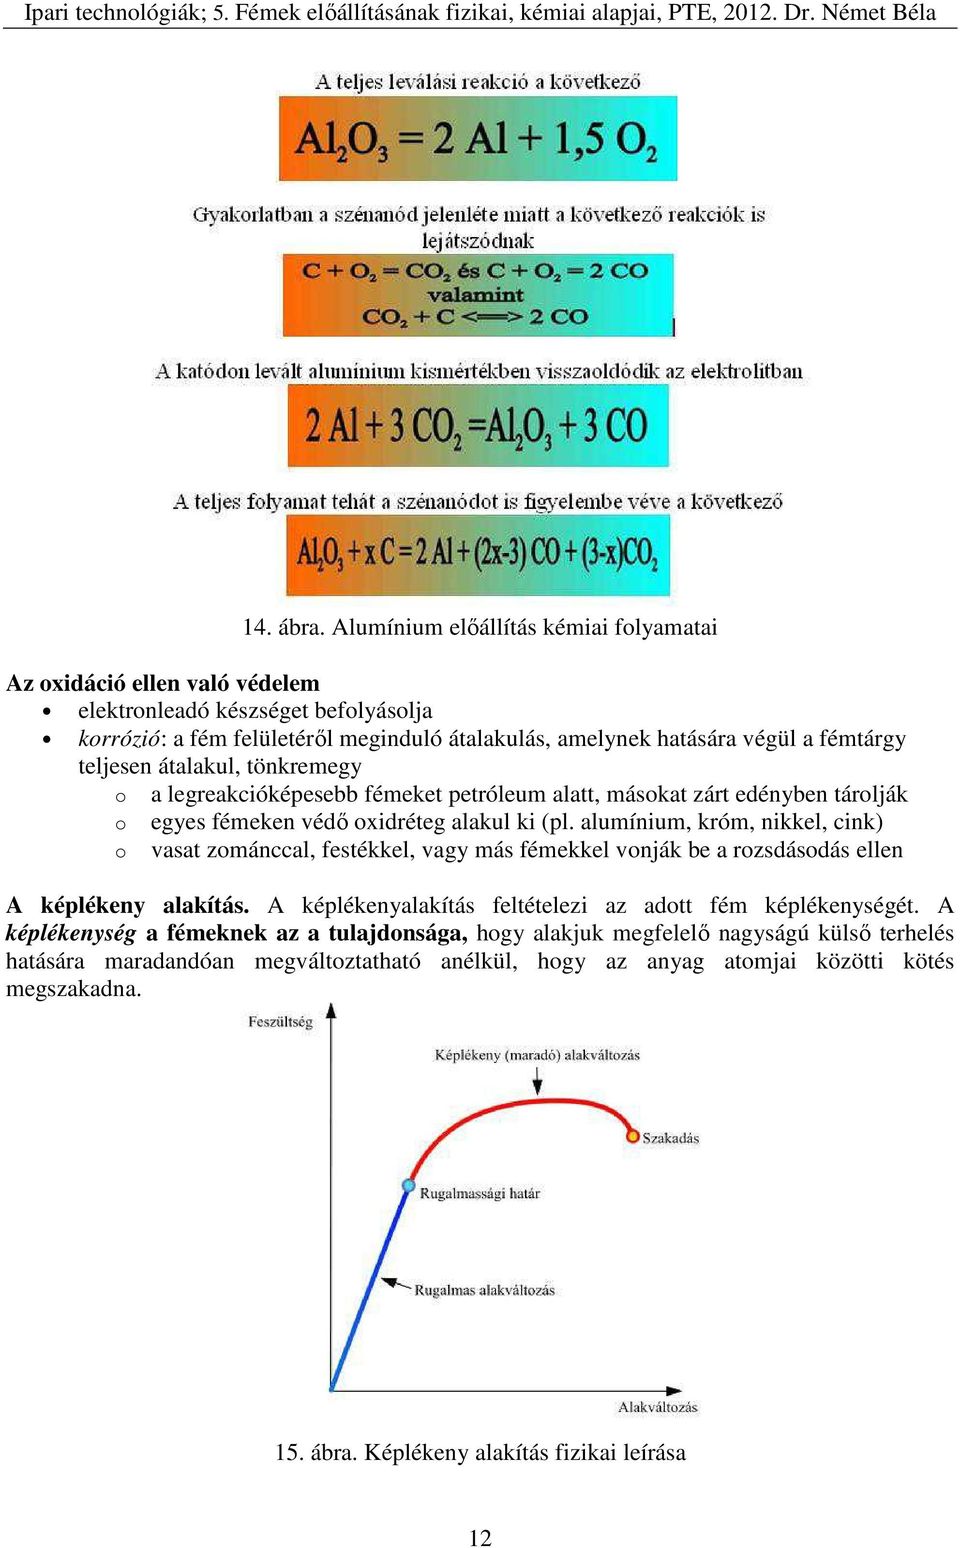 5.1. A fémek feldolgozásának fizikai alapjai. Fémtan, tüzeléstan - PDF  Ingyenes letöltés